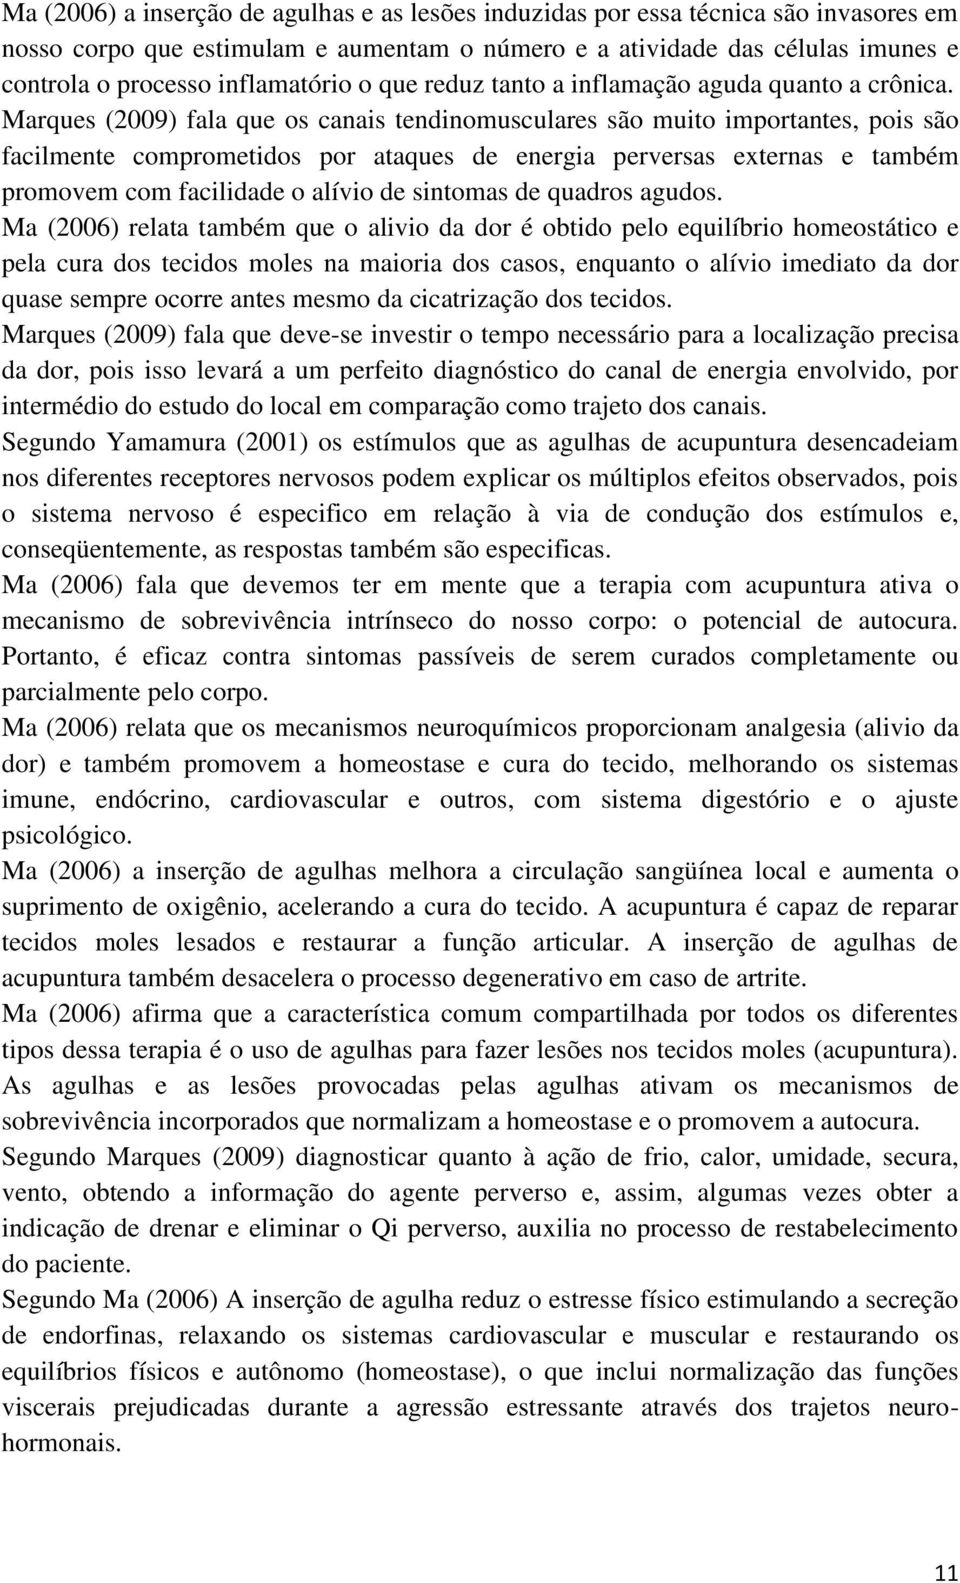 Marques (2009) fala que os canais tendinomusculares são muito importantes, pois são facilmente comprometidos por ataques de energia perversas externas e também promovem com facilidade o alívio de